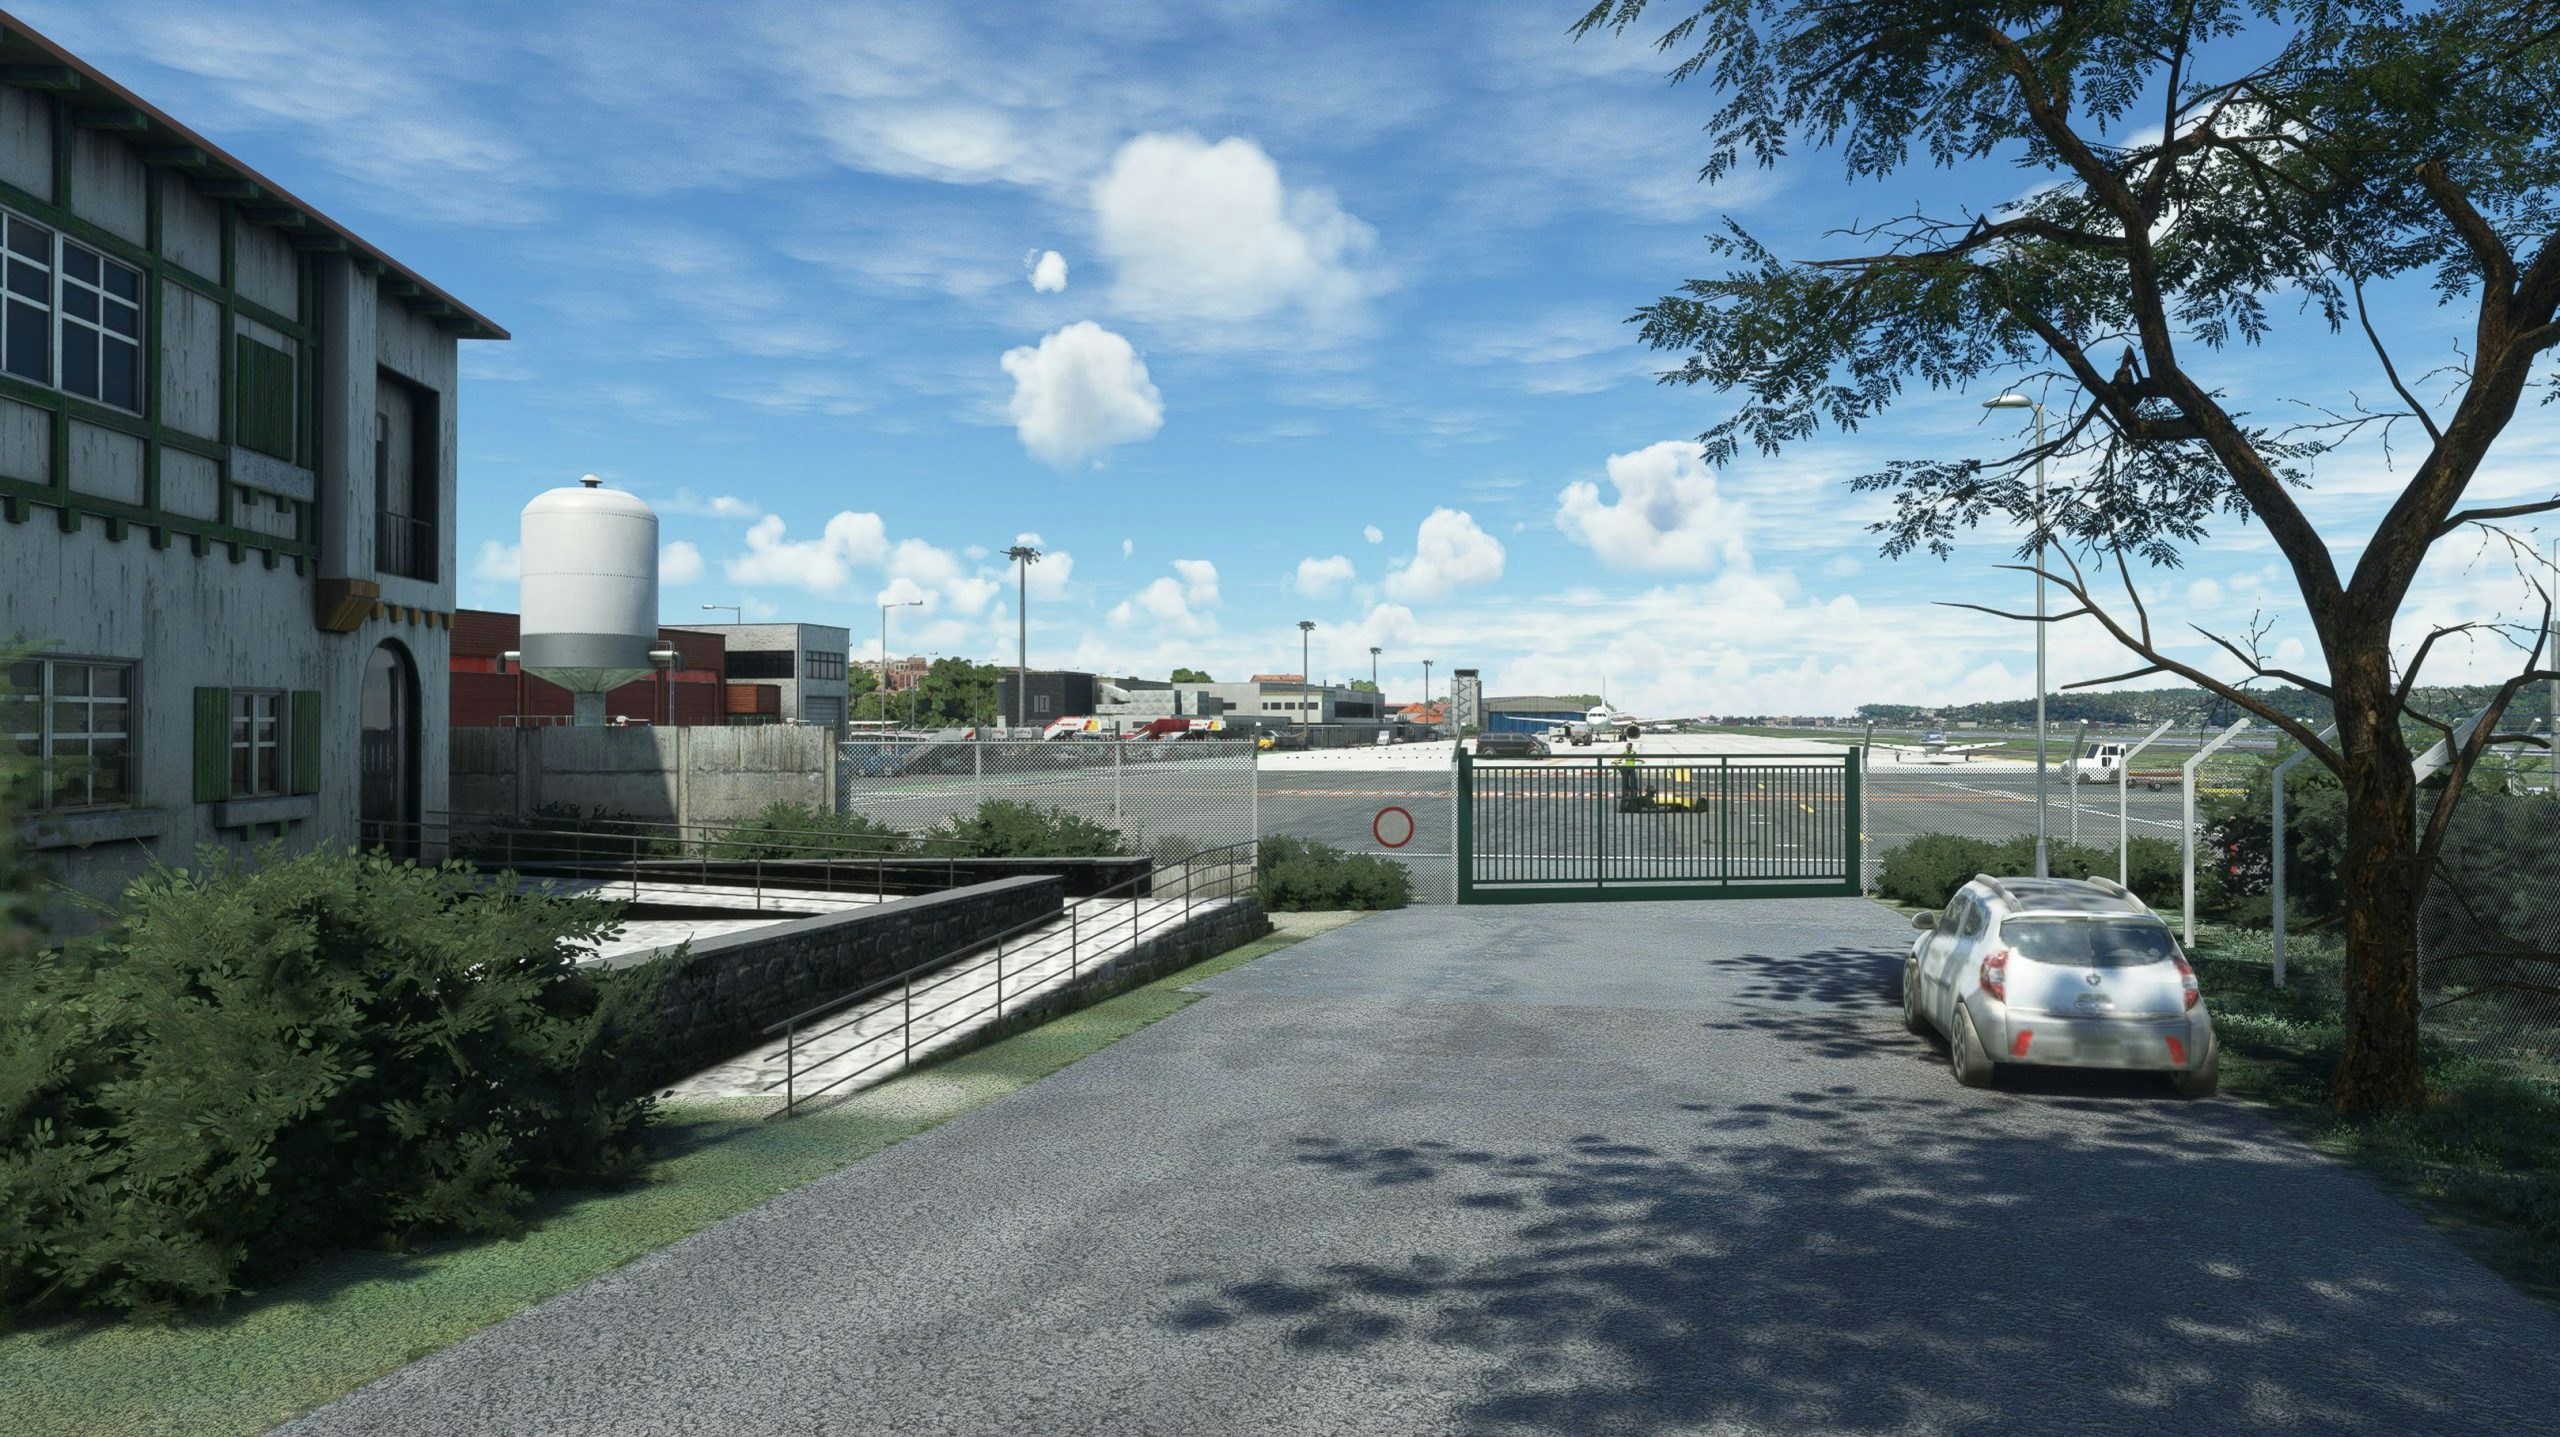 MK-Studios Releases San Sebastian Airport for MSFS; Tenerife Coming Very Soon